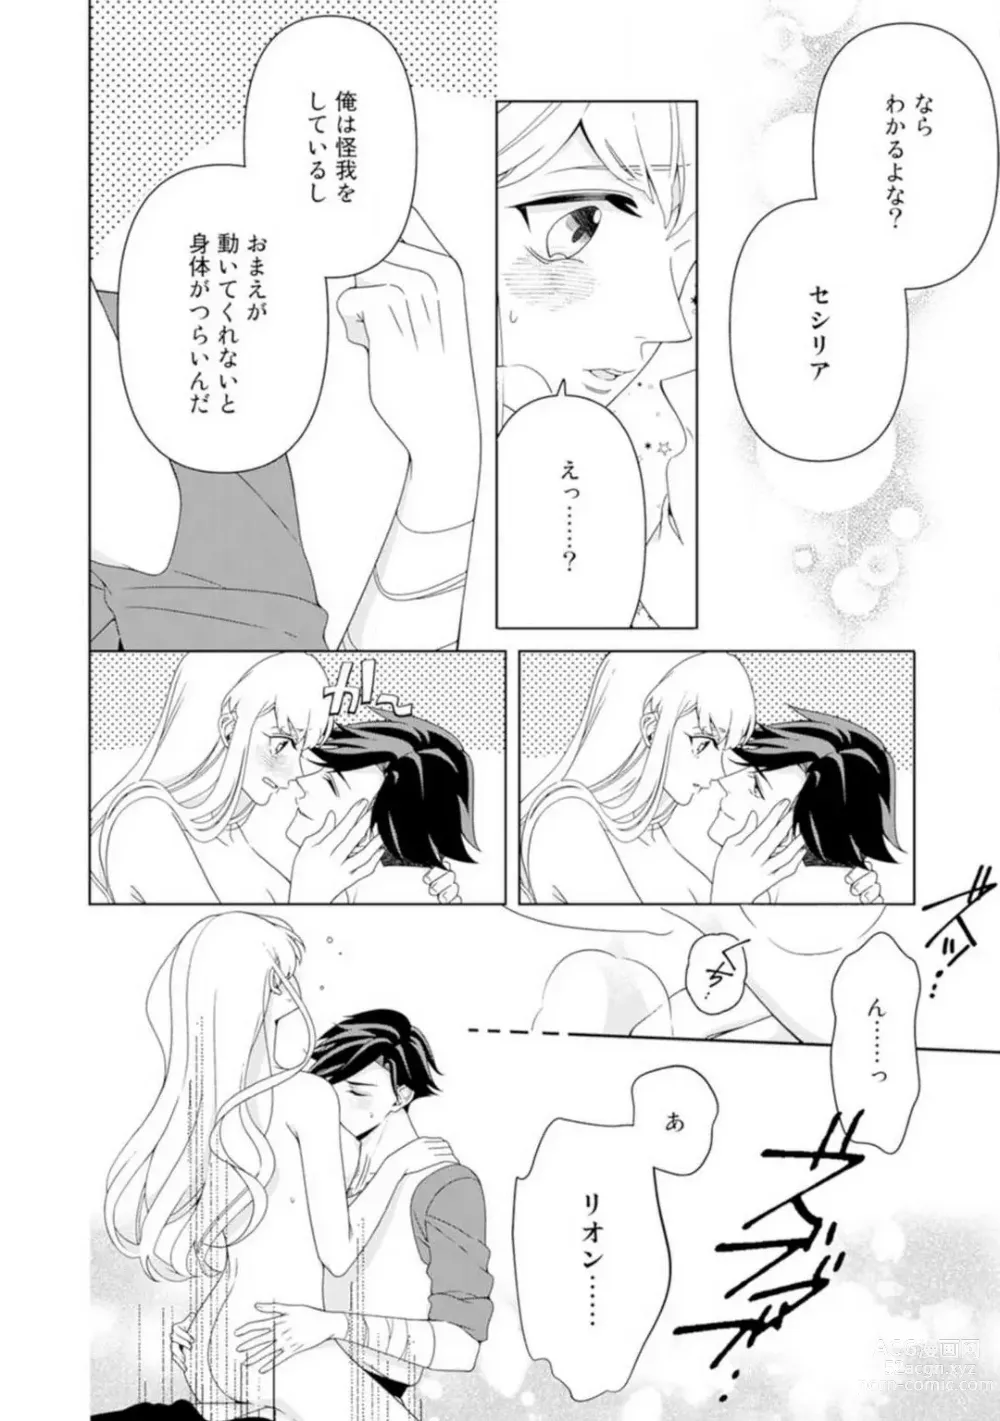 Page 114 of manga Shakunetsu no Ou no Inai ~Atsui Yubi ni Tokasarete~ 1-6